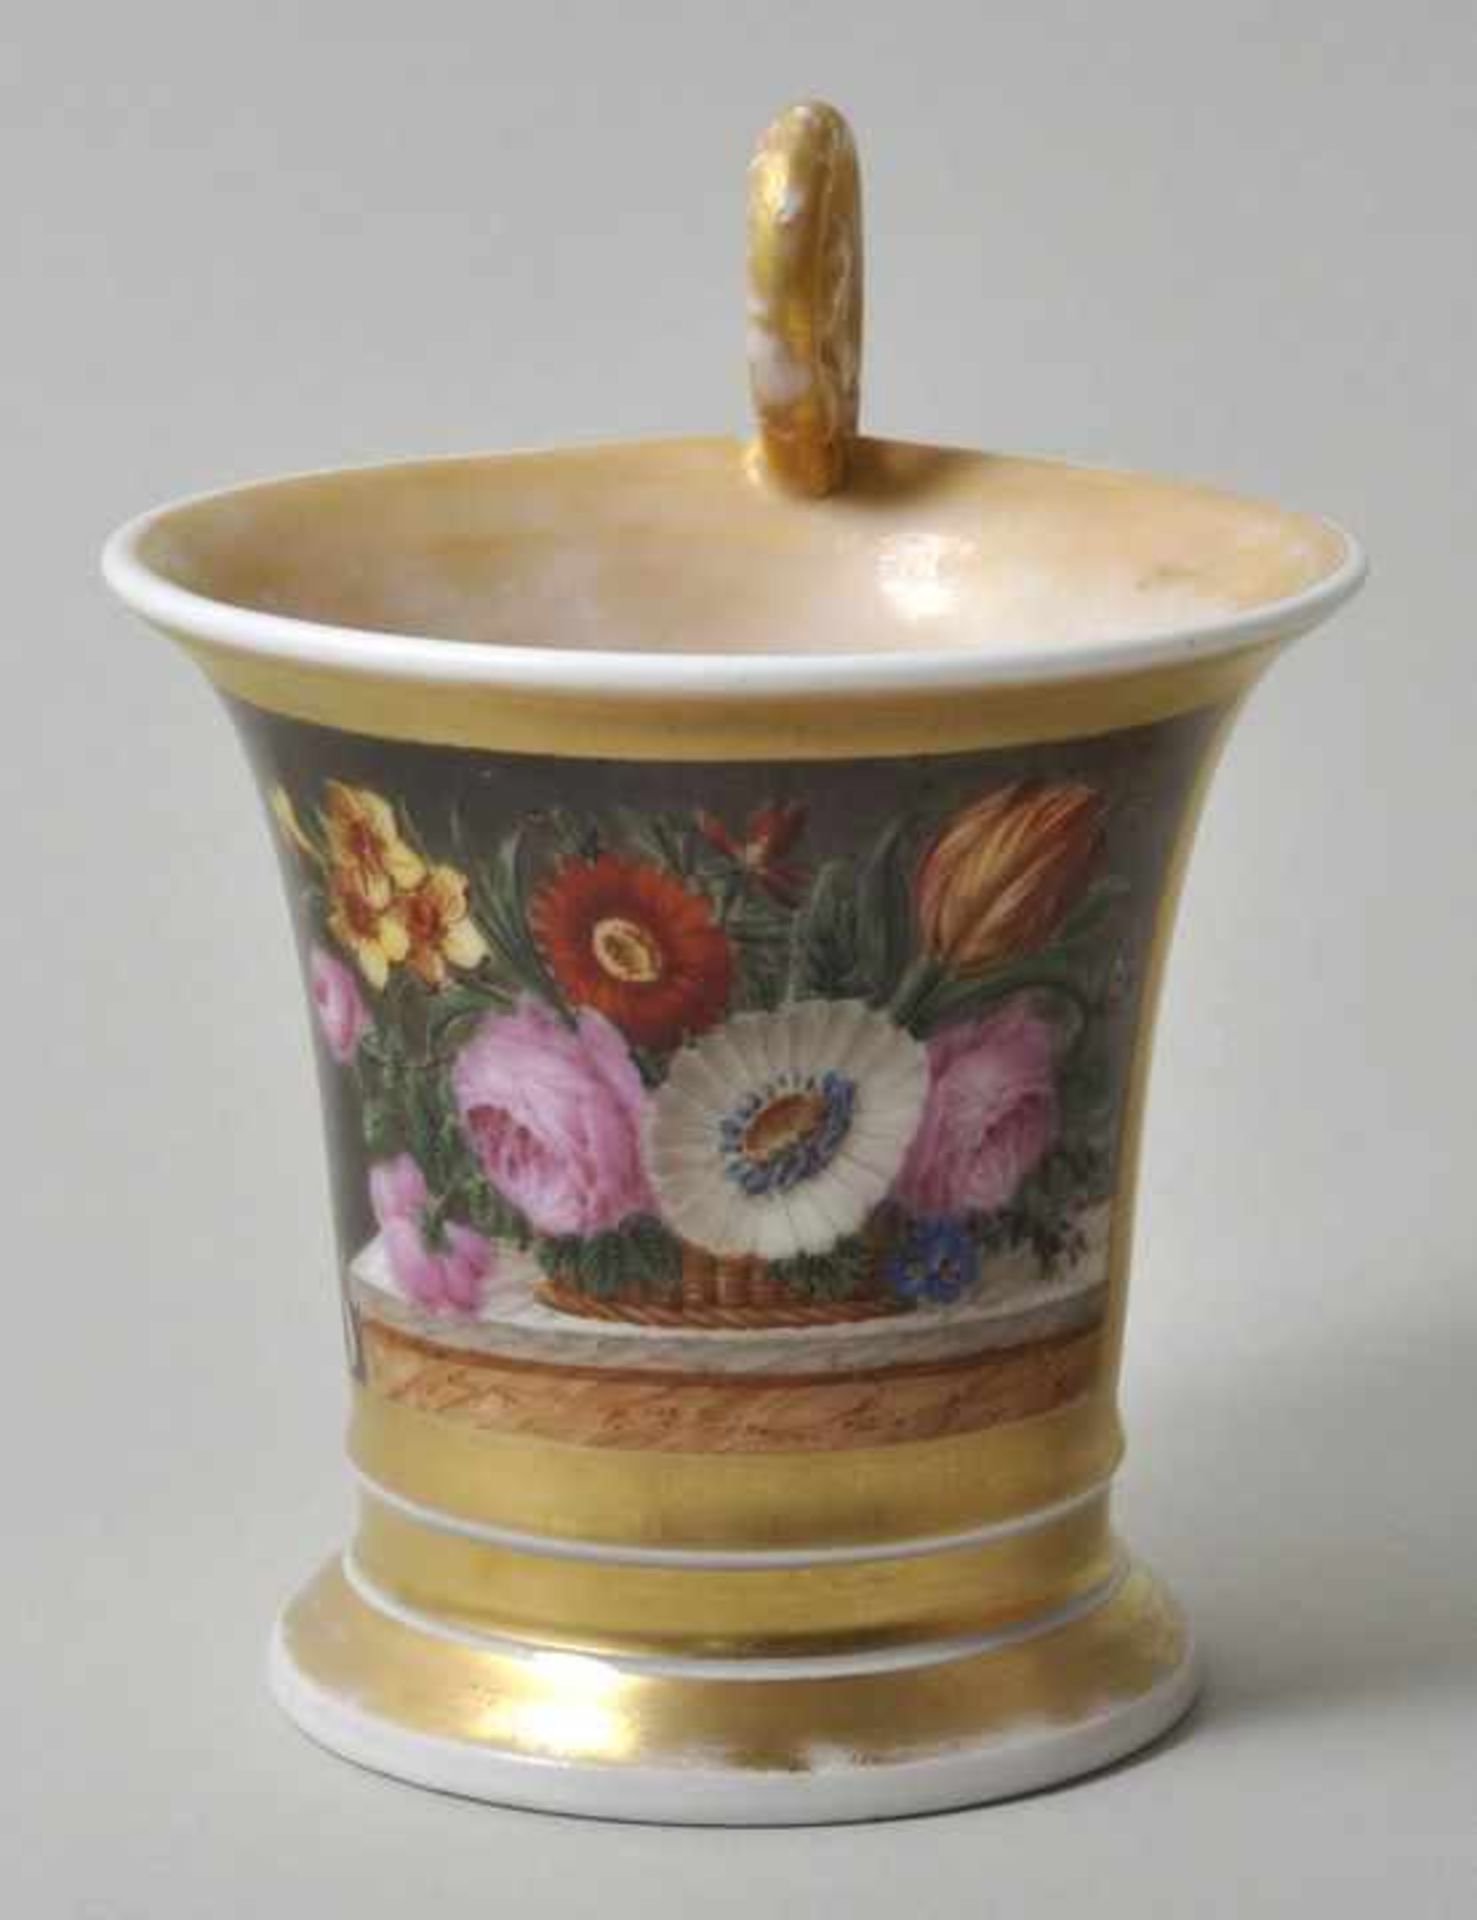 Tasse mit Stilllebenmalerei, 19. Jh.Porzellan, ausschwingende Form mit Volutenhenkel, radierter